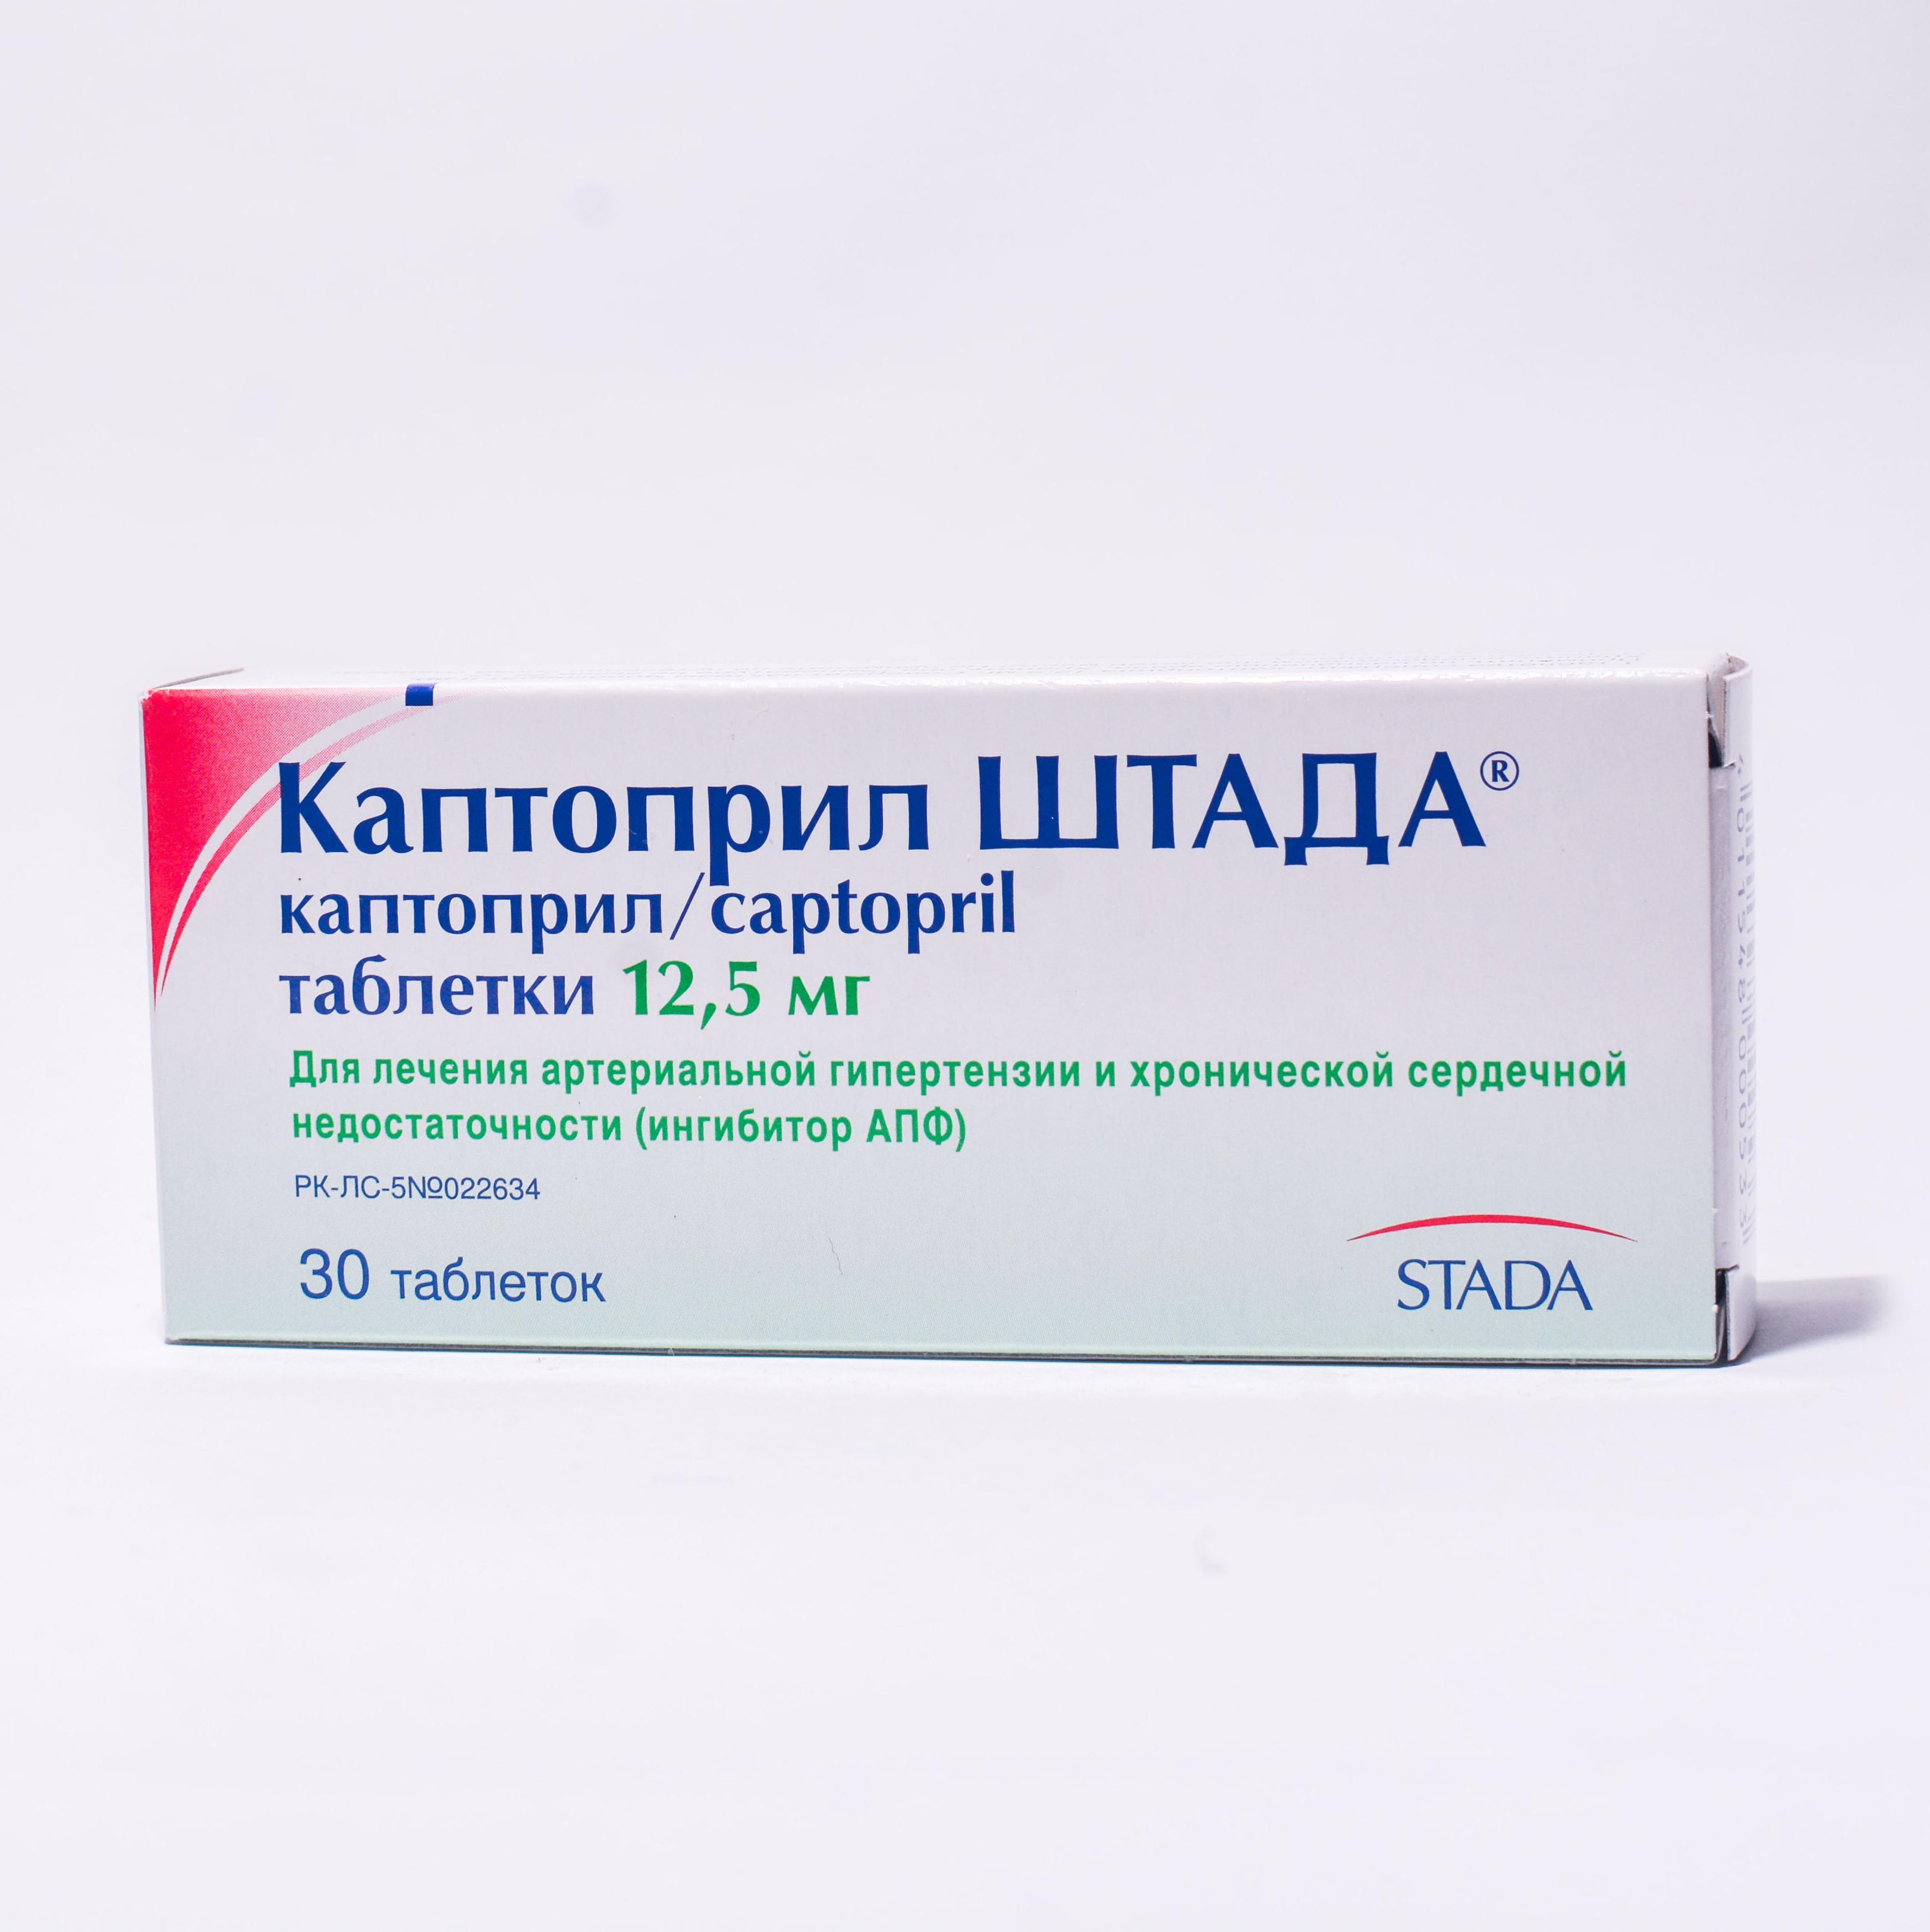 Каптоприл Штада таблеткалар 12,5 мг № 30